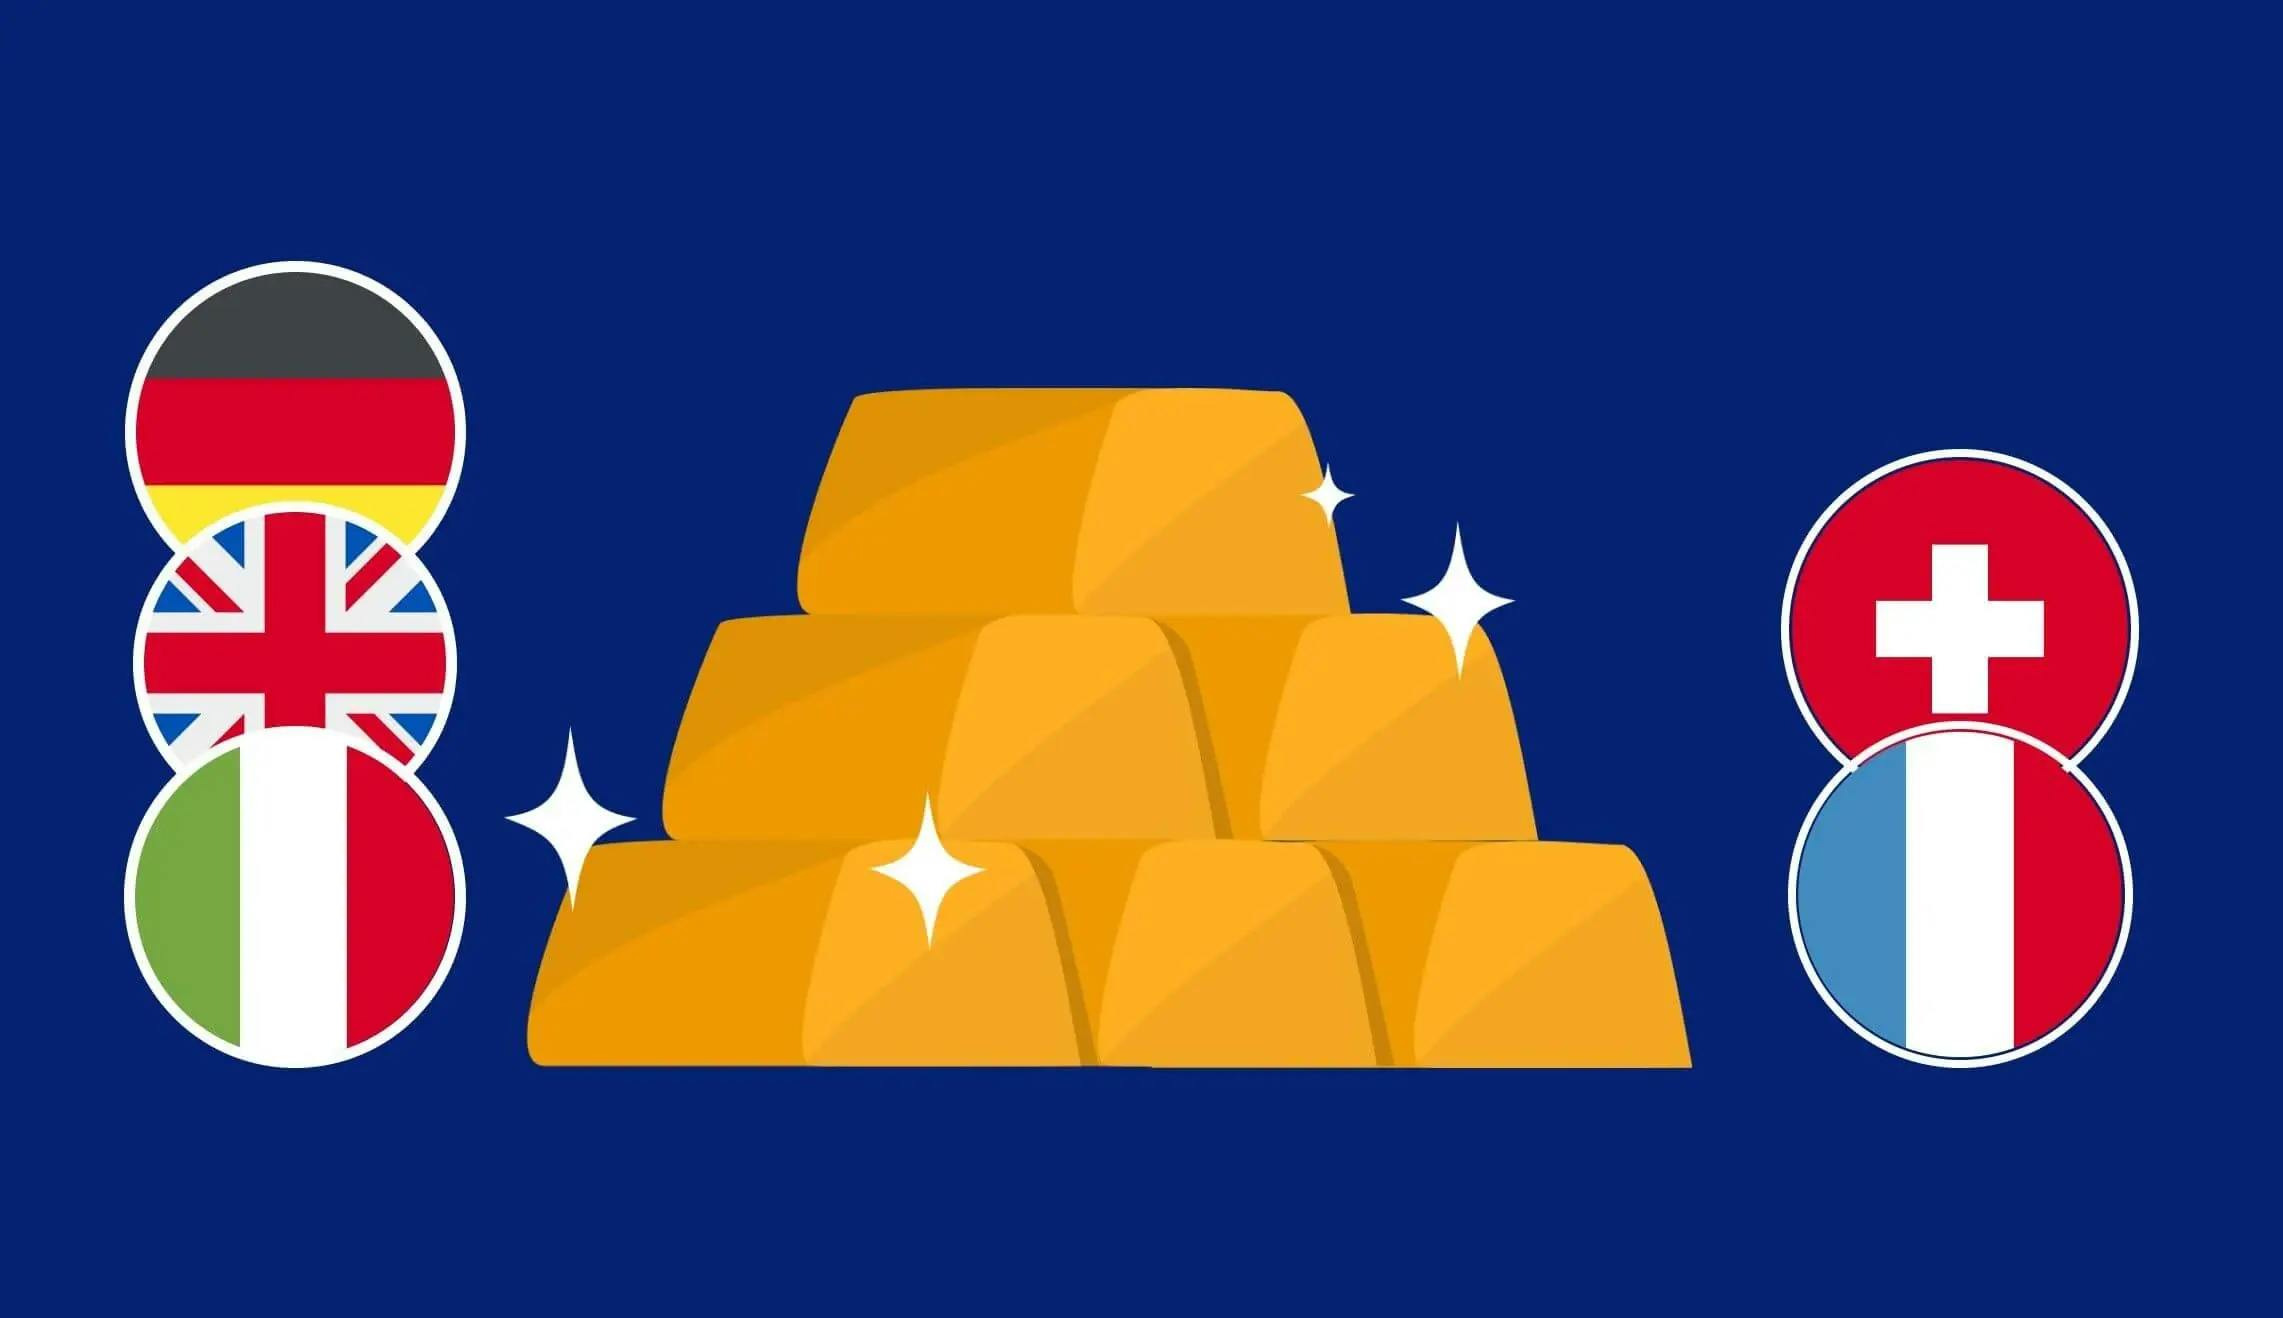 Drapeaux français, italien, allemand, britannique et suisse avec une pile de lingots d'or brillants